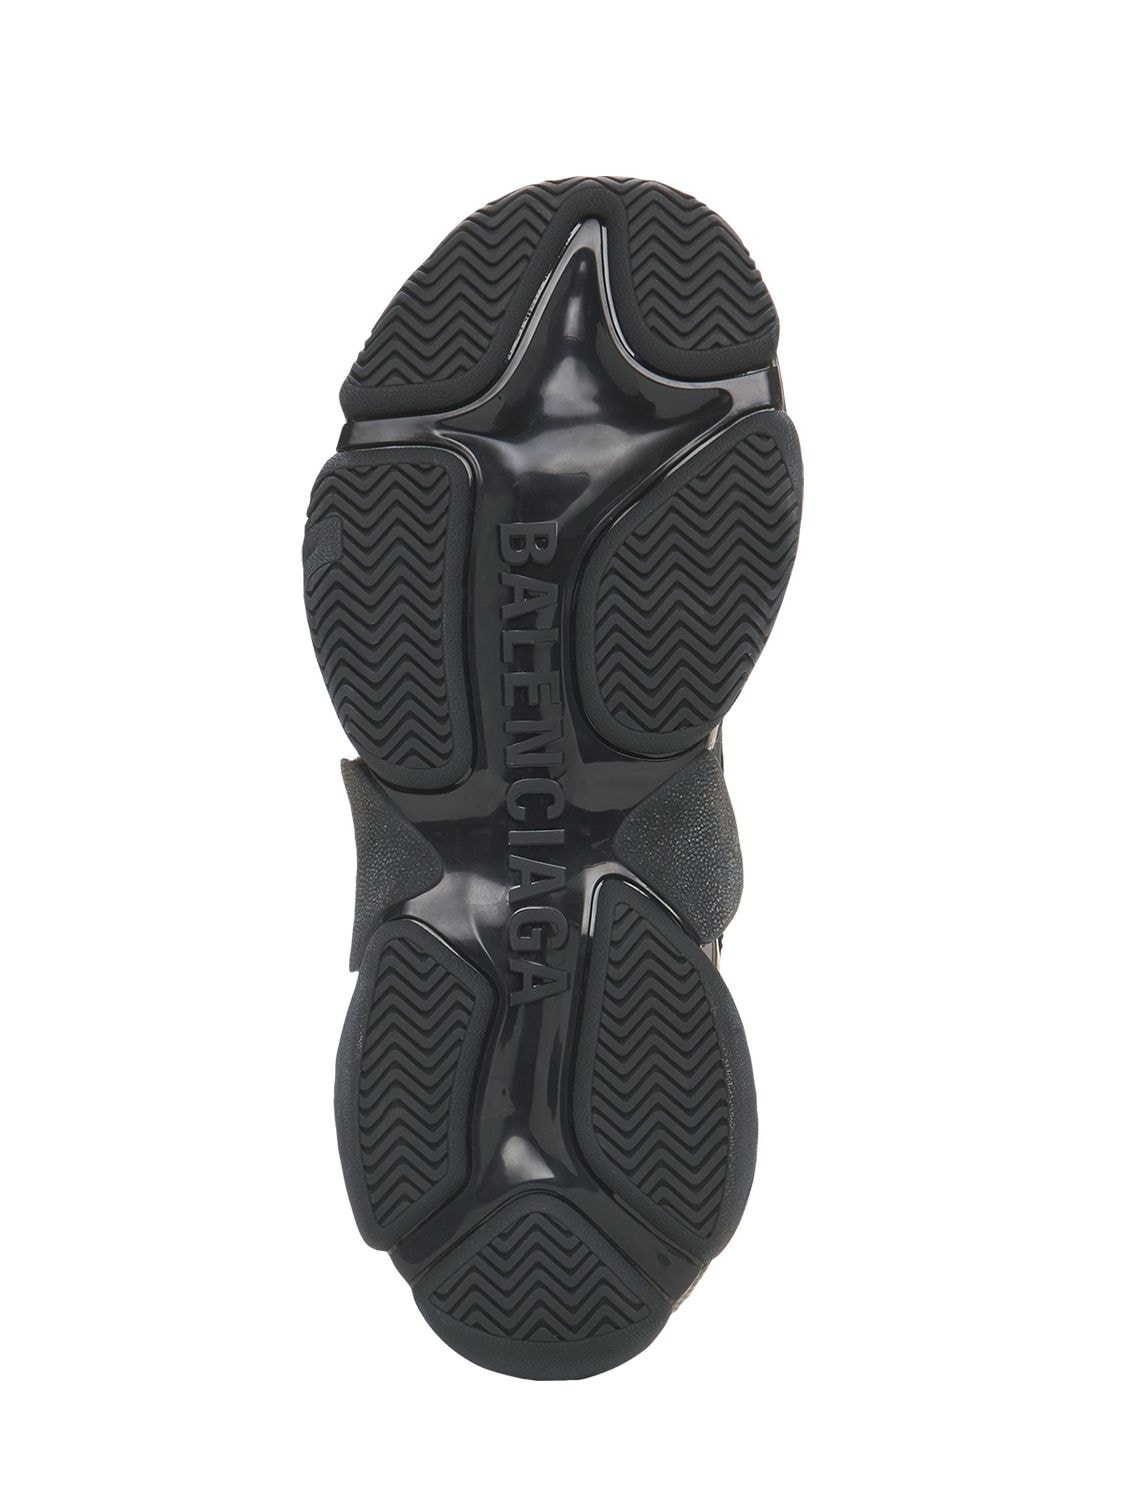 “TRIPLE S CLEAR SOLE”运动鞋